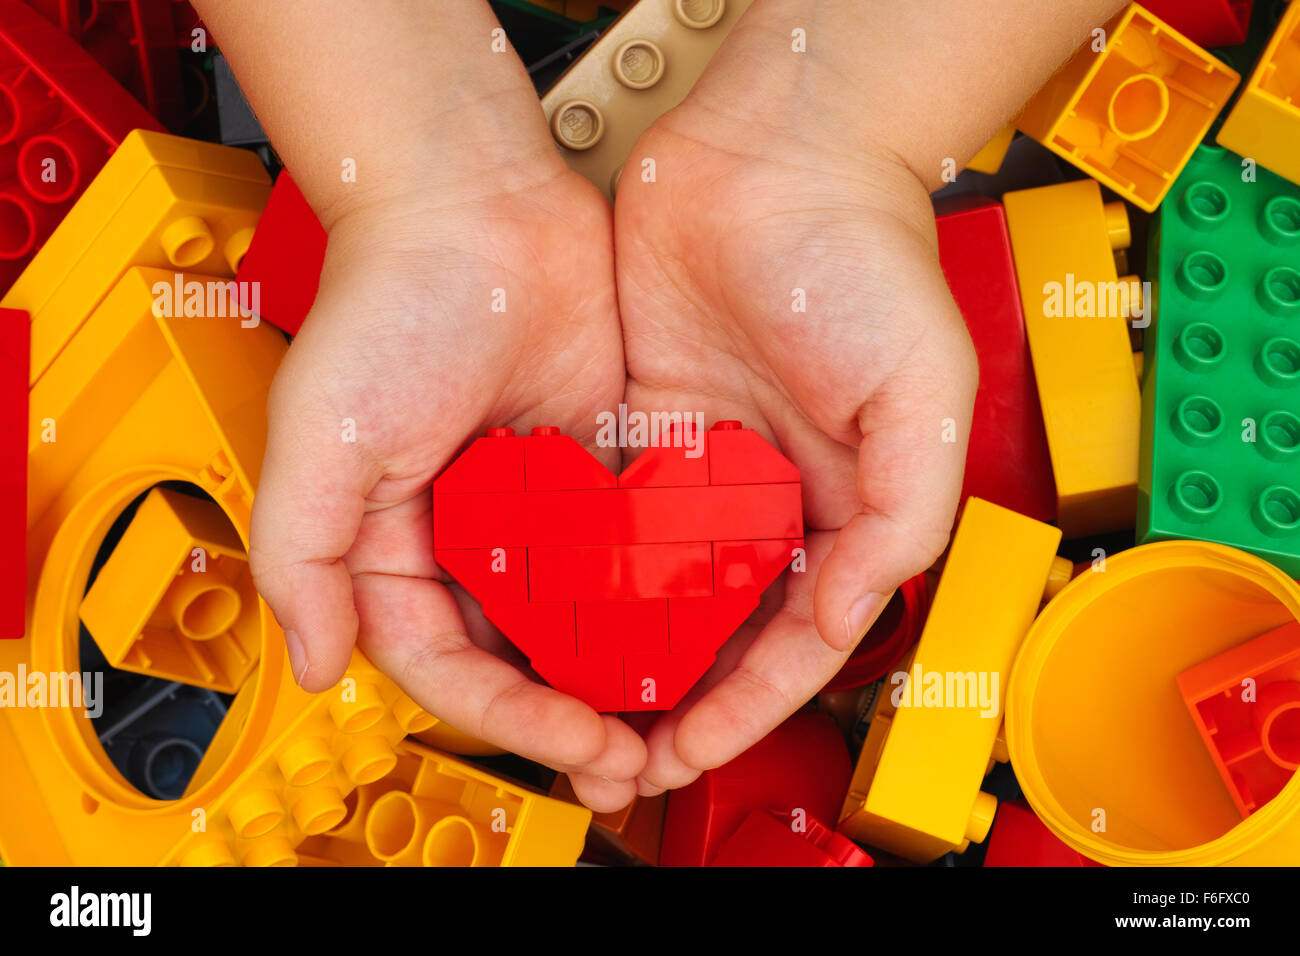 Tambow, Russische Föderation - 7. September 2015 Lego rotes Herz in  Kinderhände mit Lego Duplo blockiert Hintergrund. Studio gedreht  Stockfotografie - Alamy